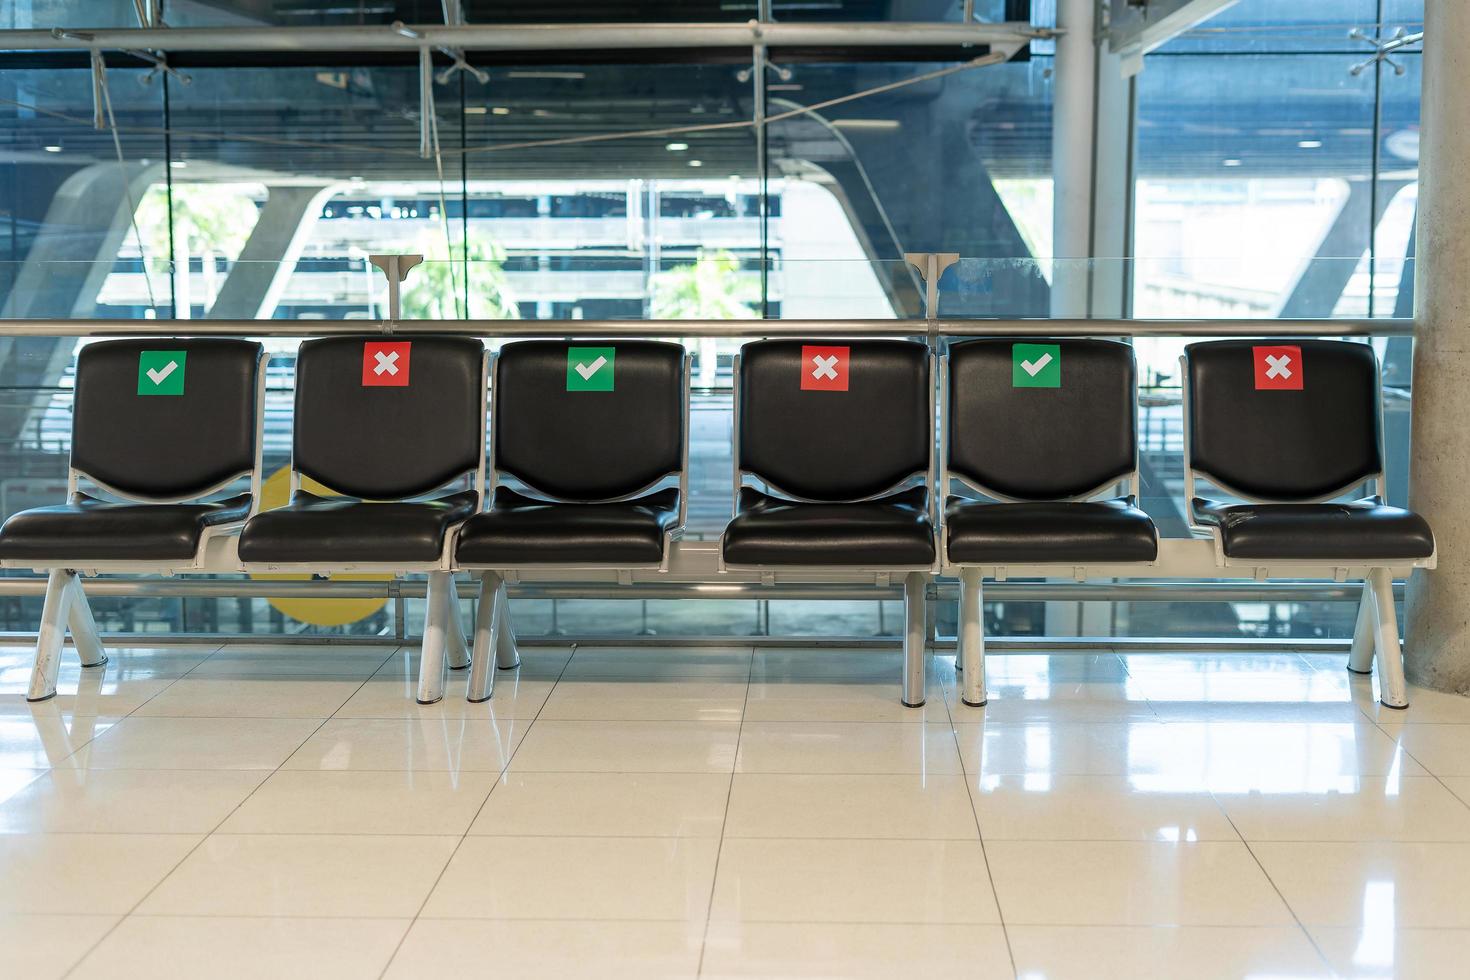 openbaar stoel indelingen uit elkaar geplaatst maatschappelijk gedurende de covid-19 situatie in de luchthaven terminal. sociaal afstand concept. foto